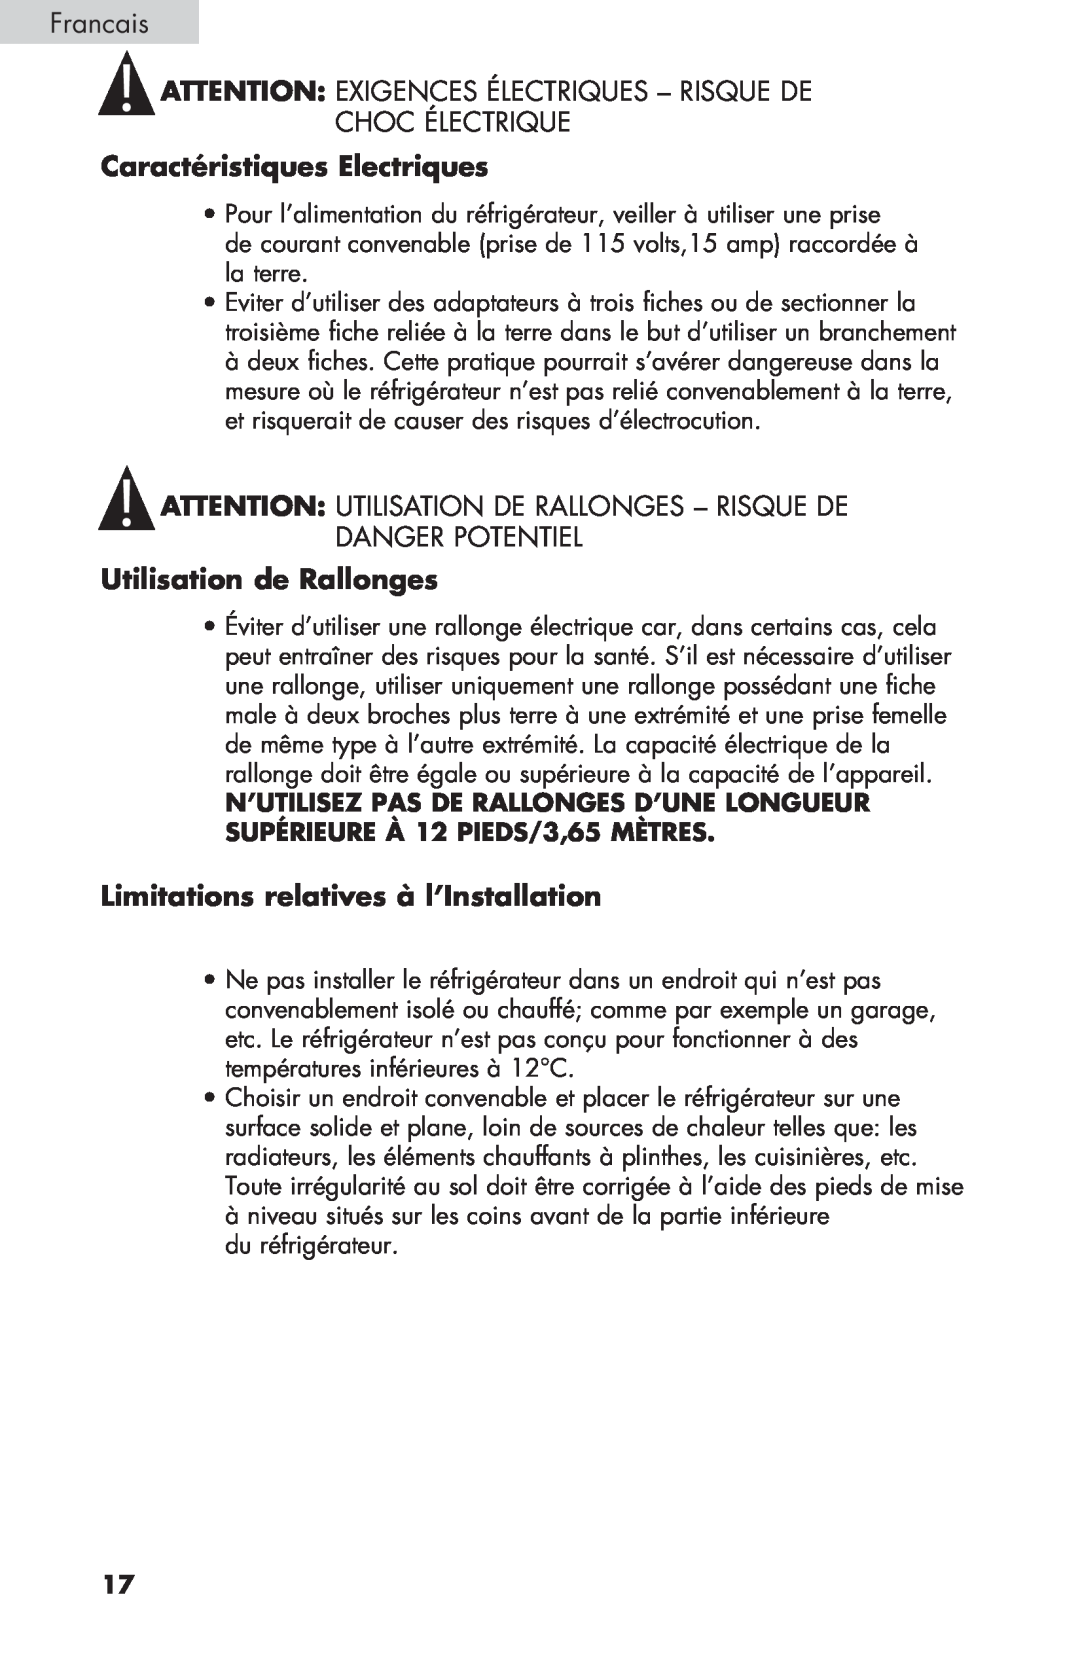 Haier BCF27B manual Francais ATTENTION EXIGENCES ÉLECTRIQUES - RISQUE DE CHOC ÉLECTRIQUE, Caractéristiques Electriques 